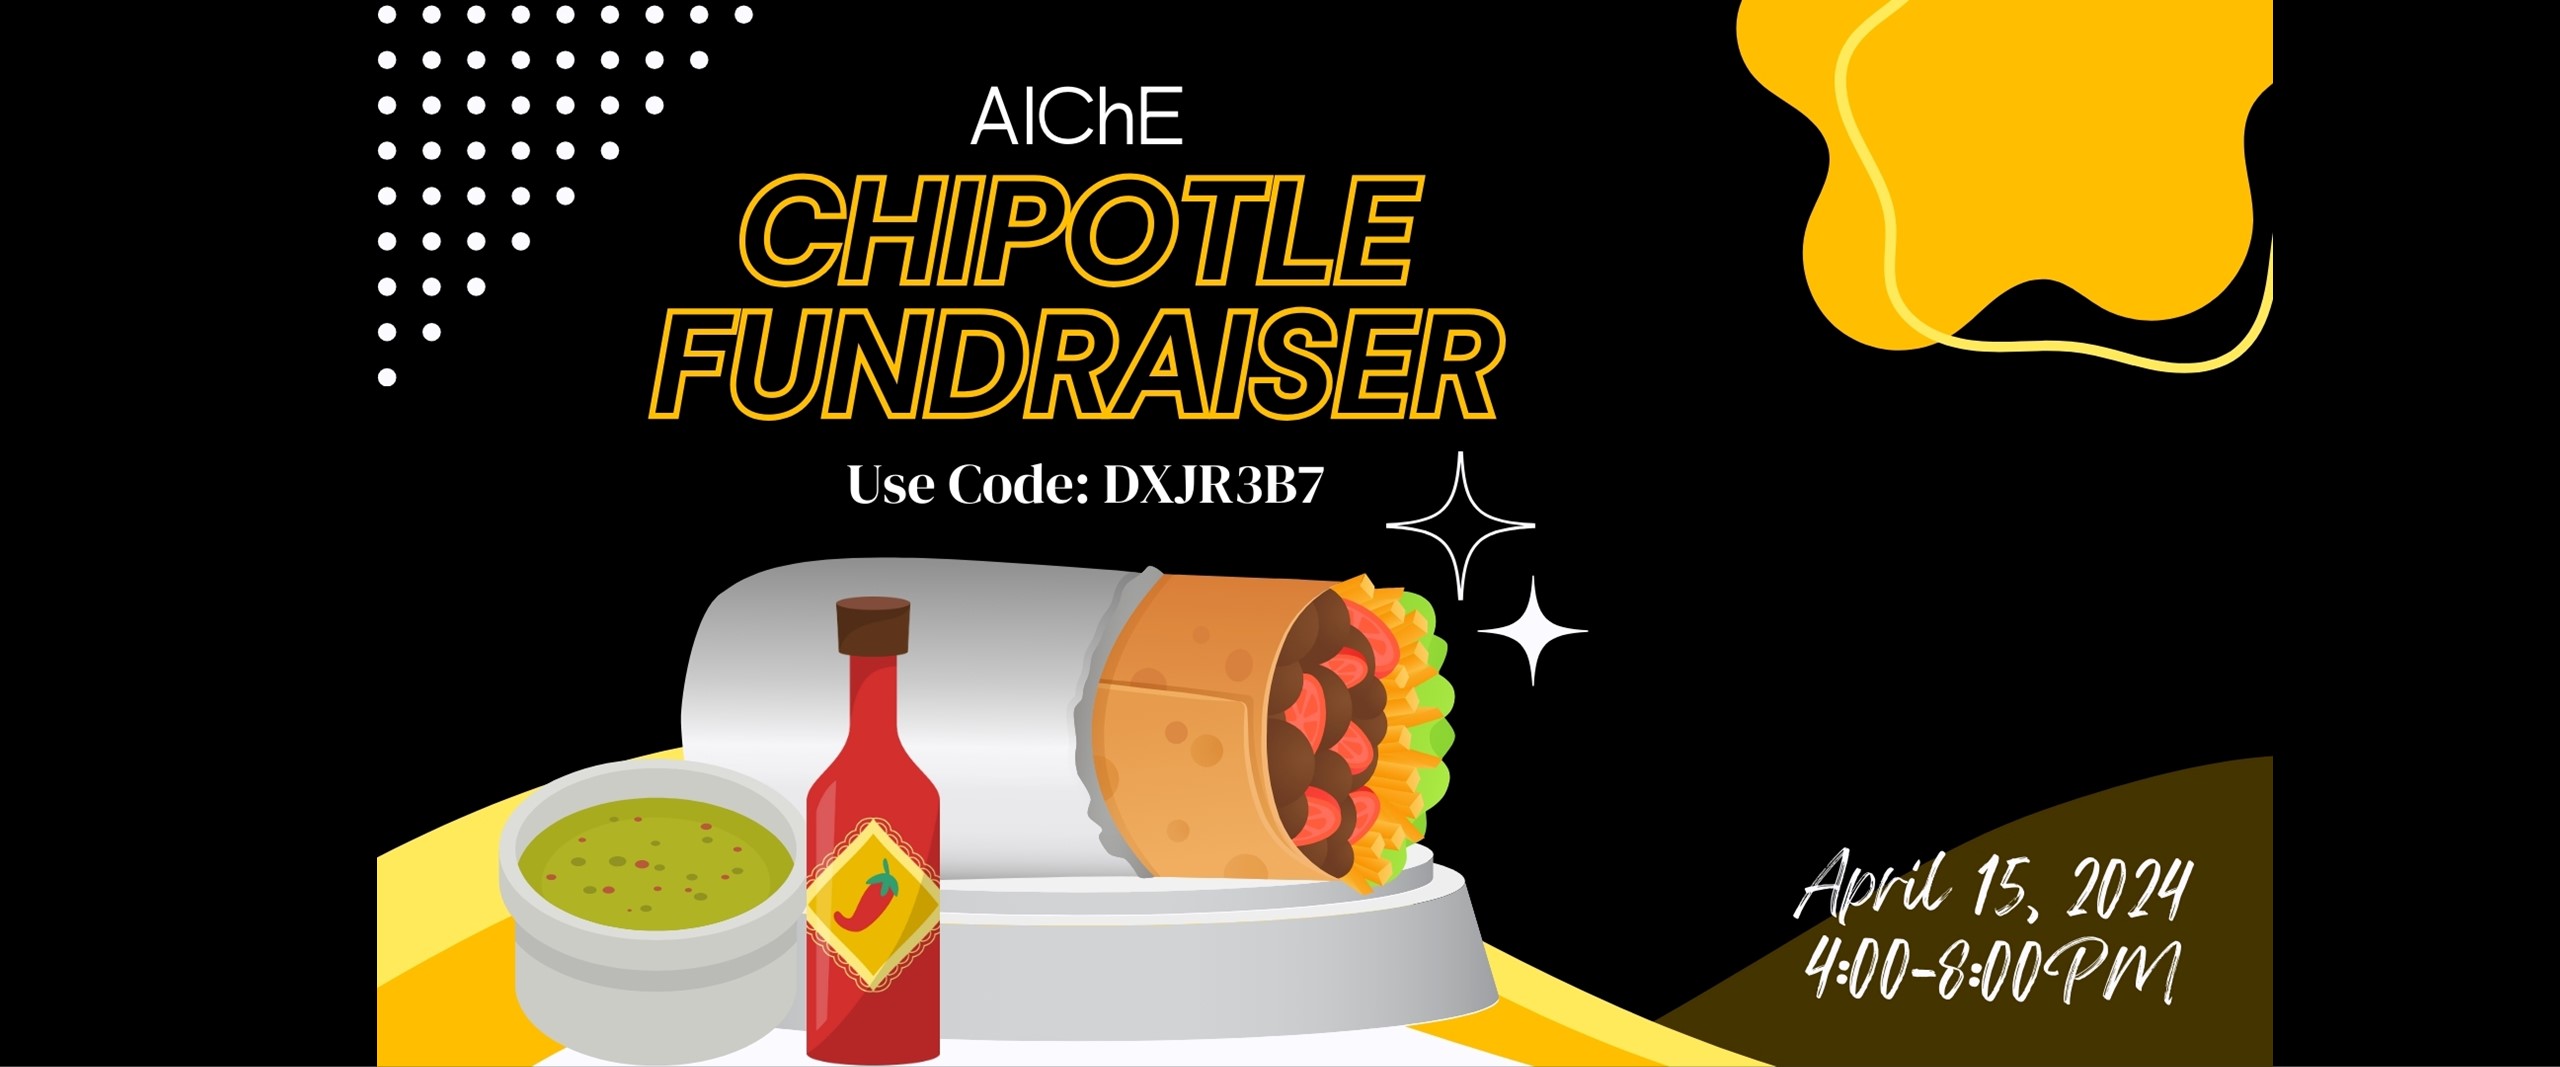 AIChE Chipotle Fundraiser